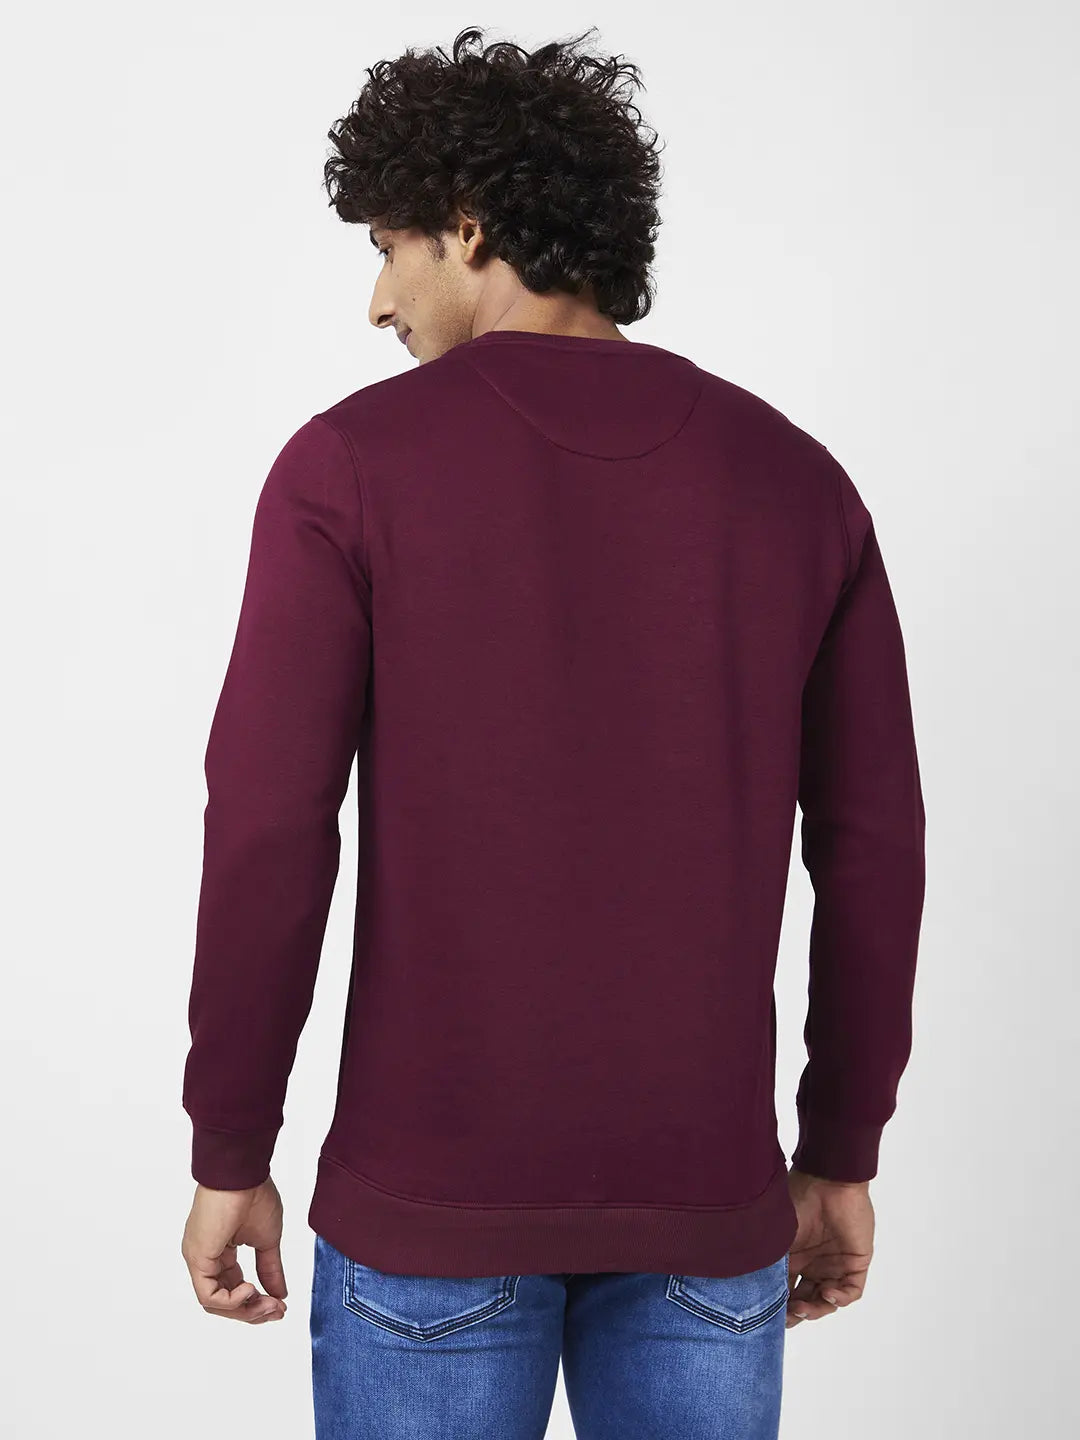 Spykar Men Wine Red Blended Slim Fit Full Sleeve Round Neck Printed Casual Sweatshirt